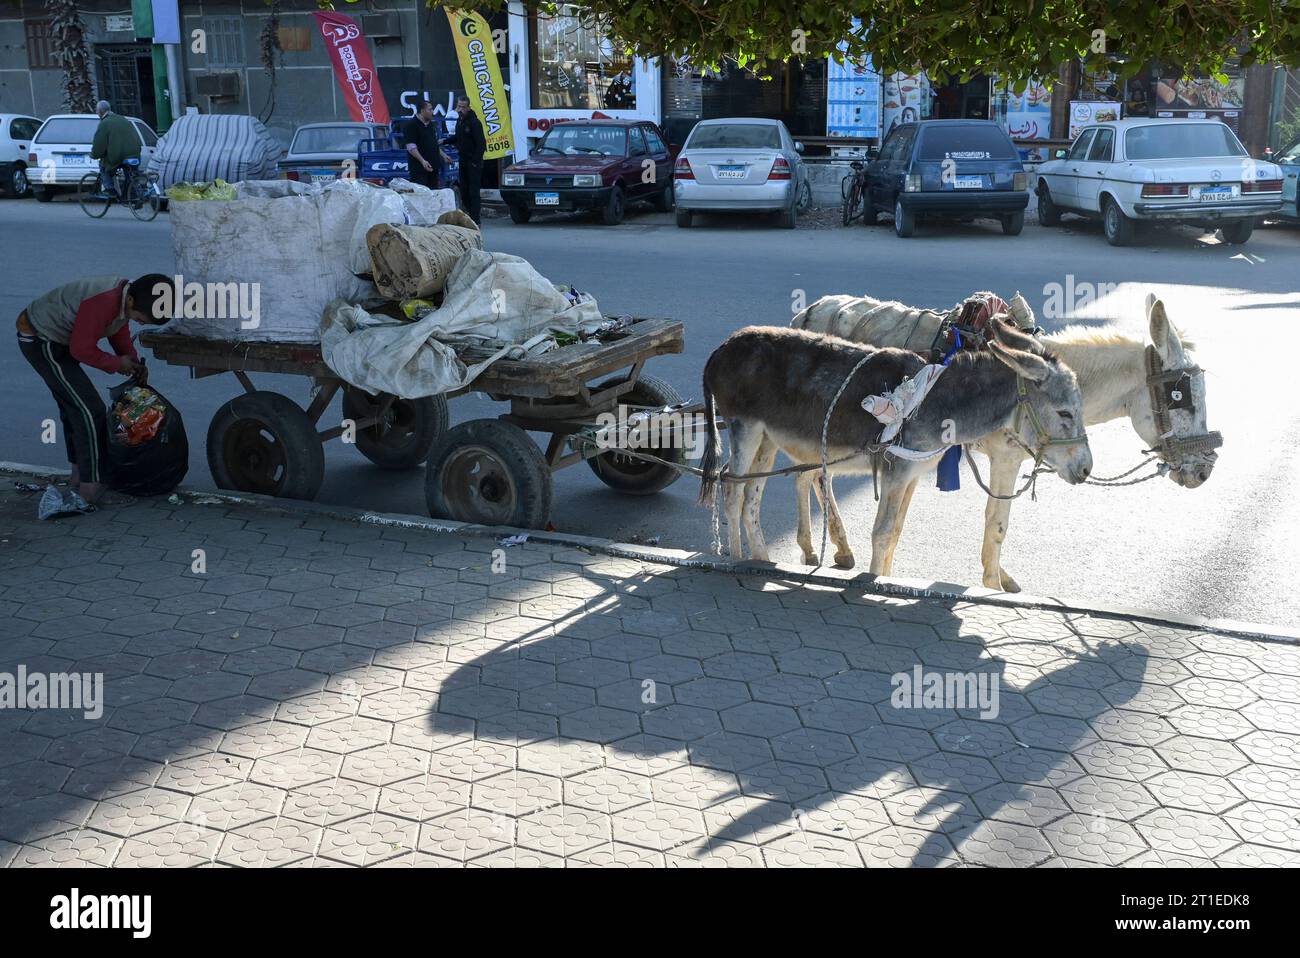 EGYPT, Asyut, city center, waste picker with donkey cart / ÄGYPTEN, Assiut, Stadtzentrum, Müllsammler mit Eselskarren Stock Photo